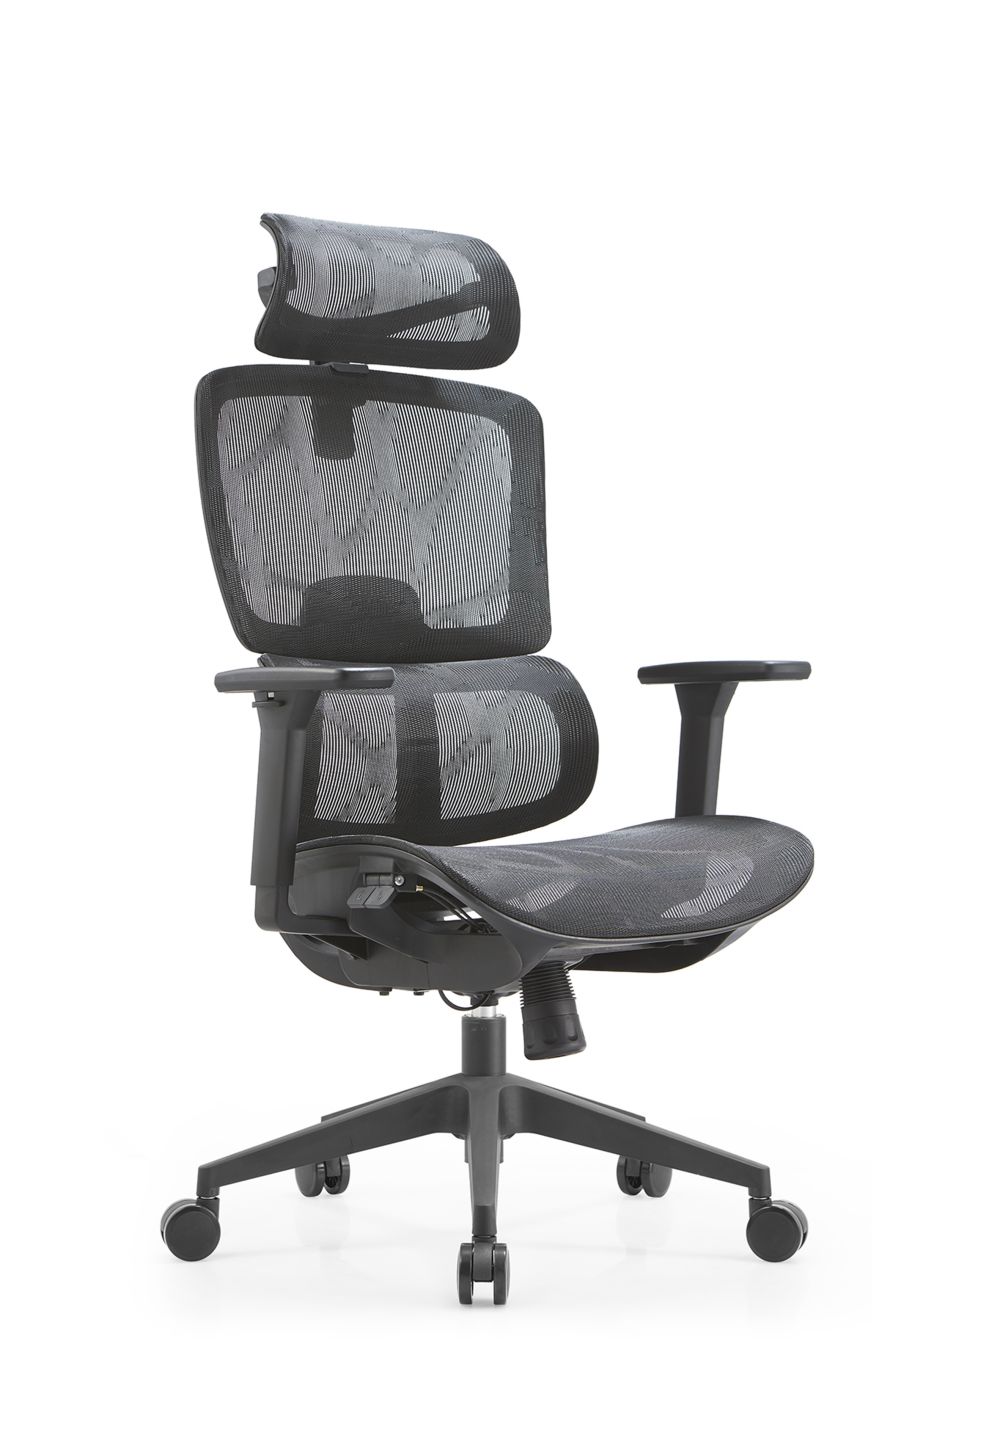 A legjobb ergonomikus szék (1)